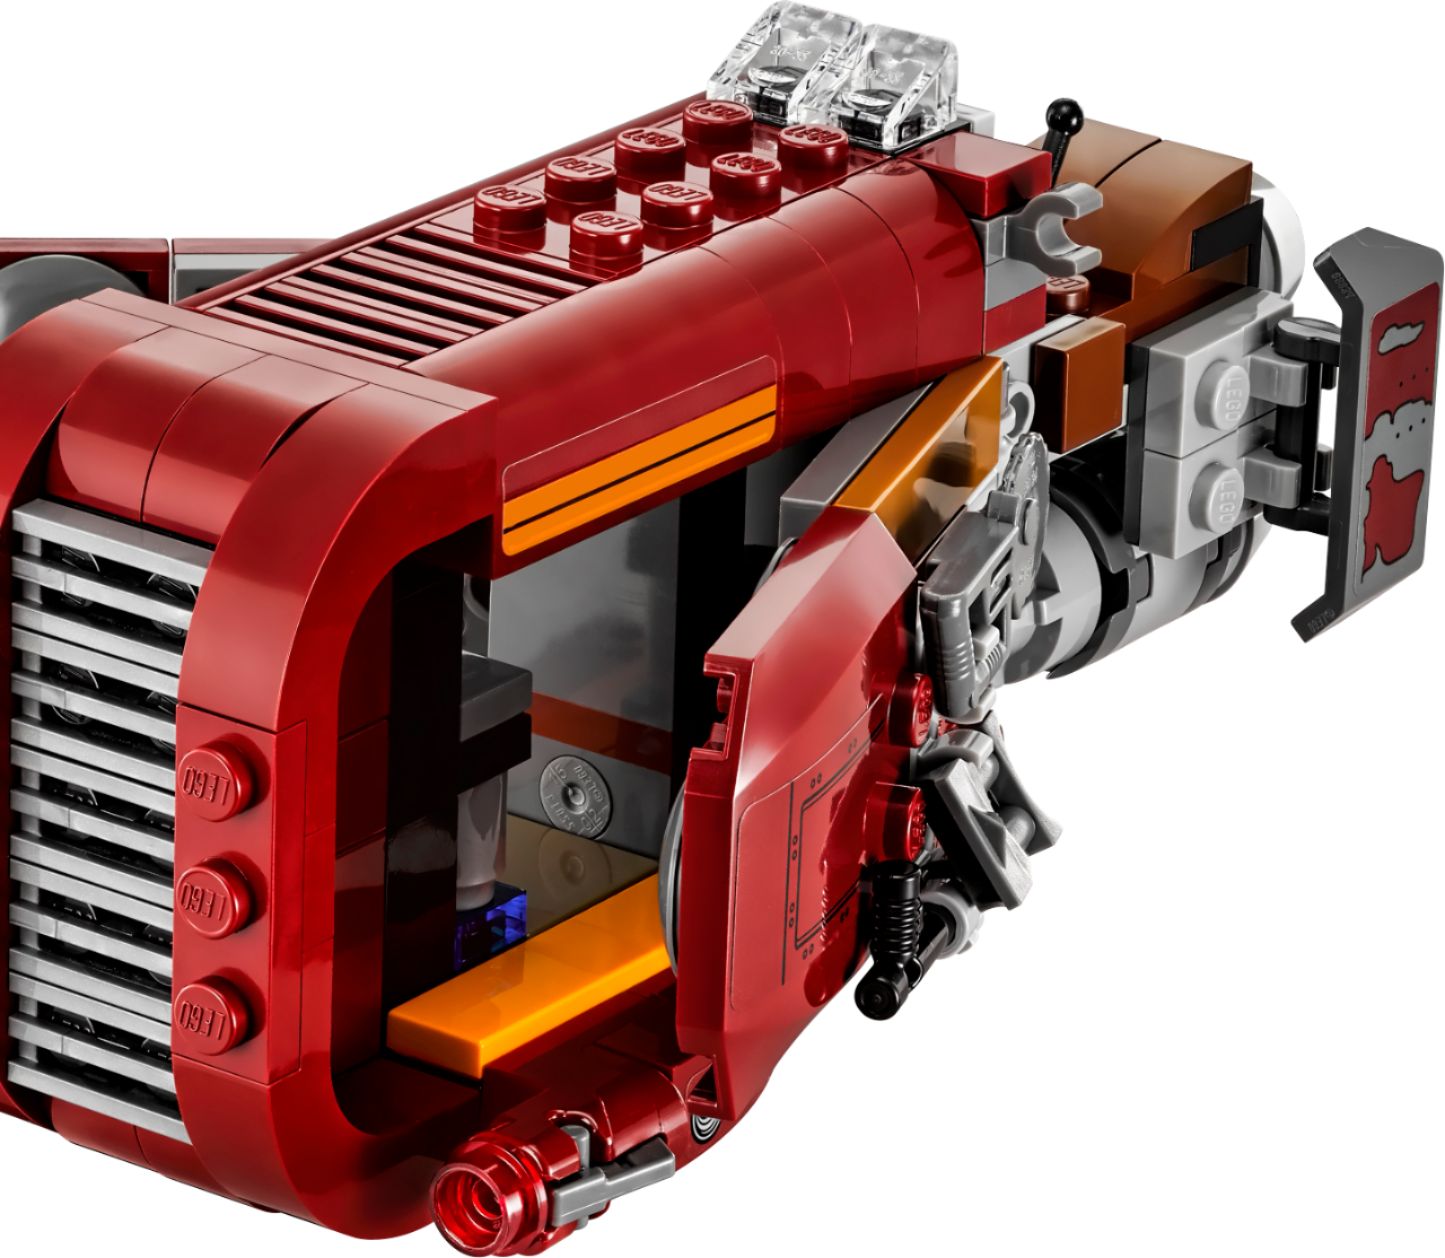 for sale online Lego Star Wars Rey's Speeder 75099 